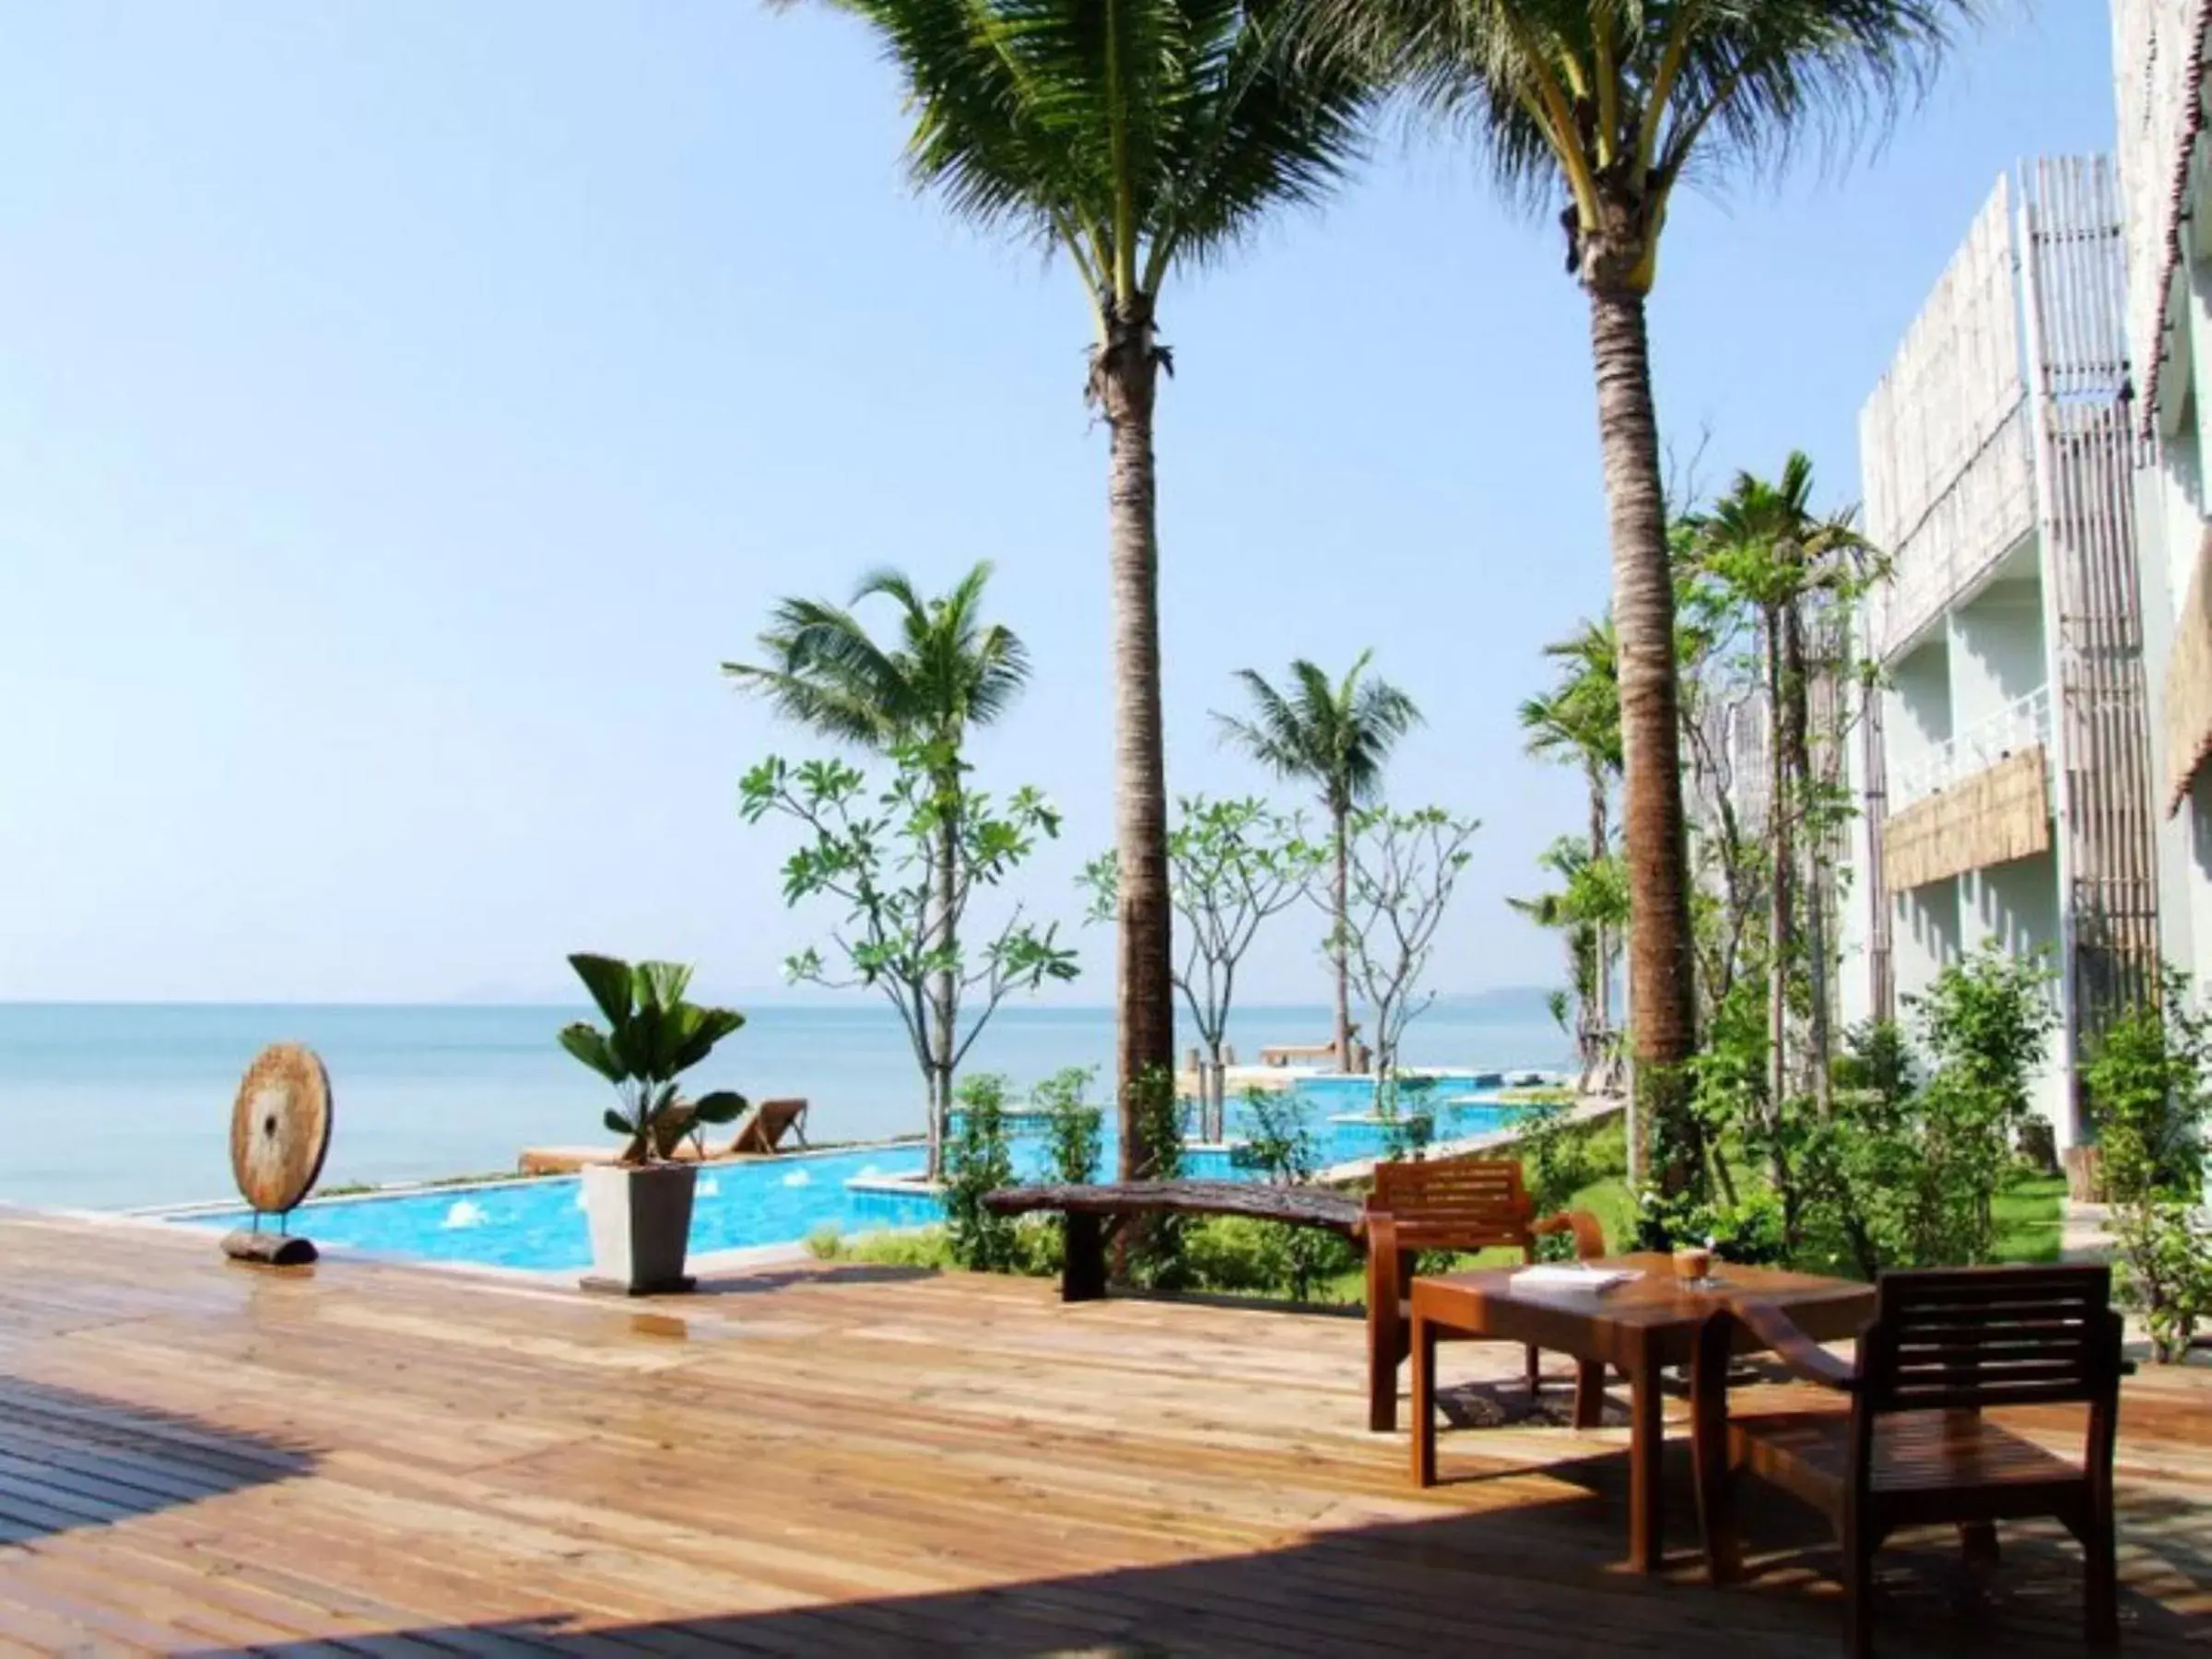 Balcony/Terrace, Swimming Pool in Bari Lamai Resort